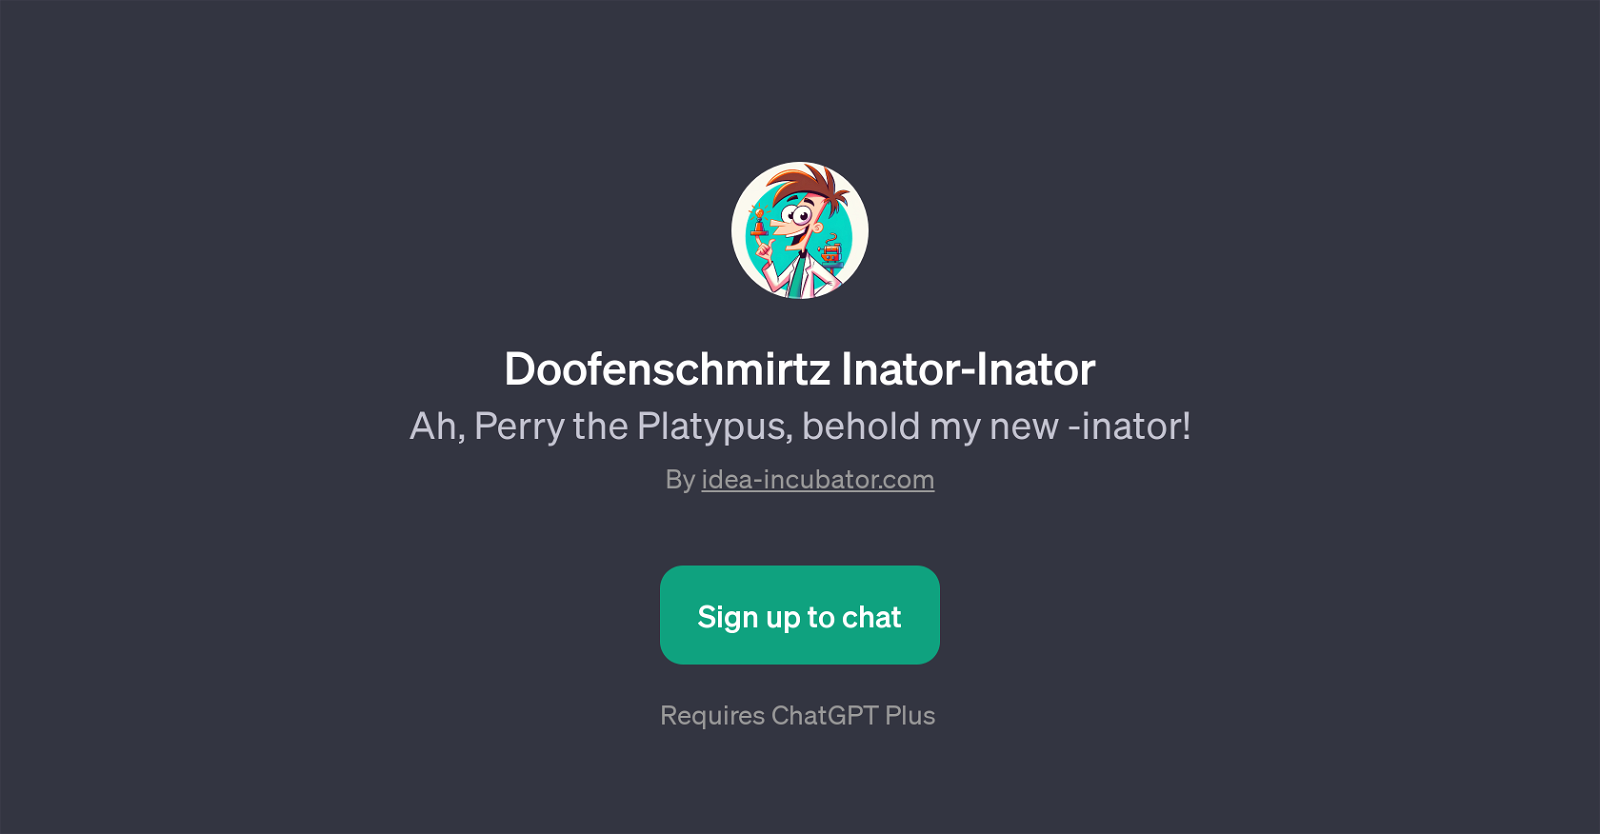 Doofenschmirtz Inator-Inator website